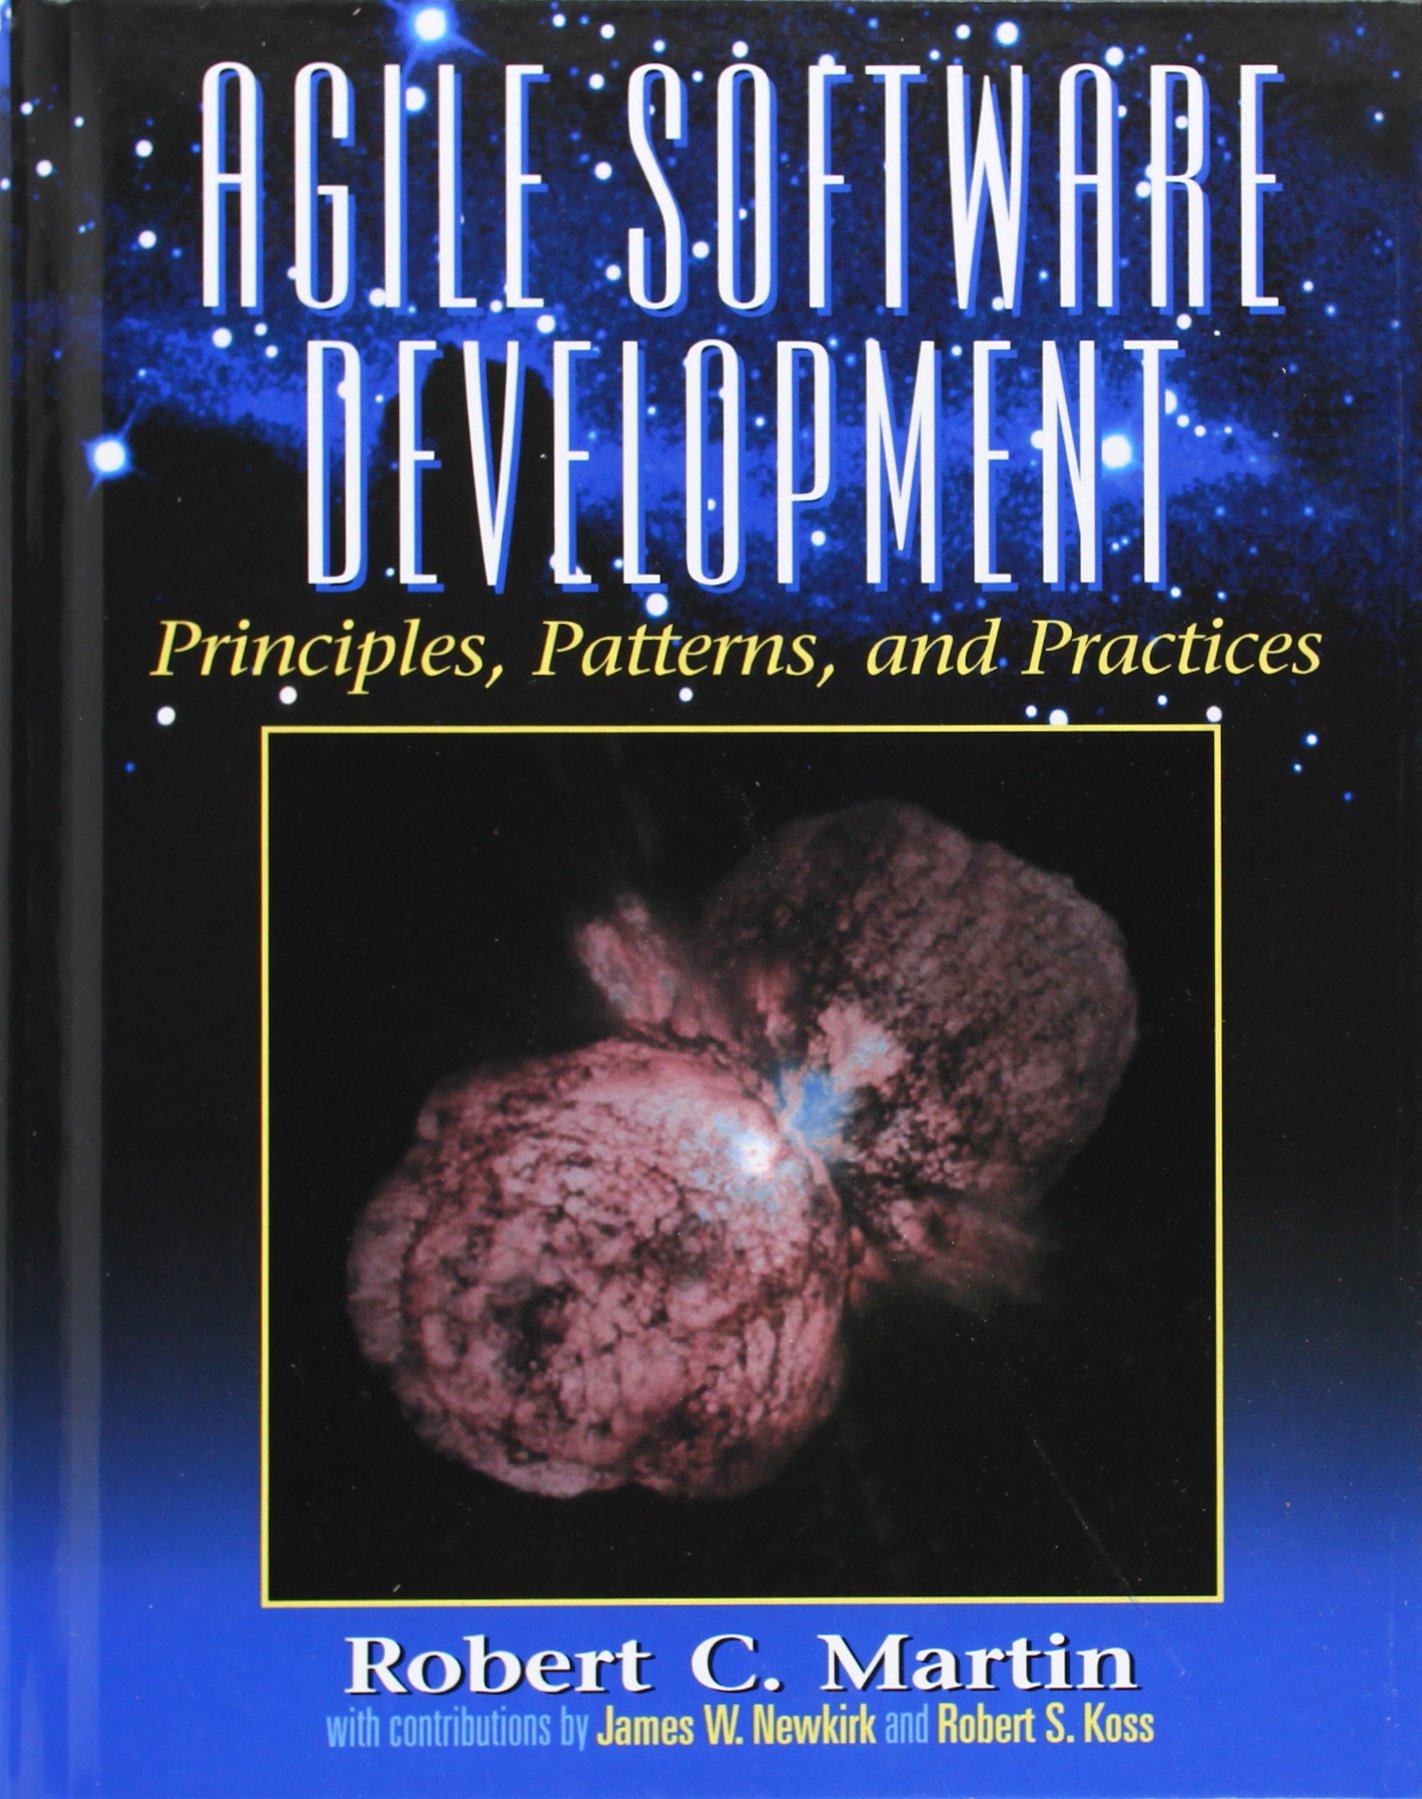 敏捷软件开发，原理，模式和实践